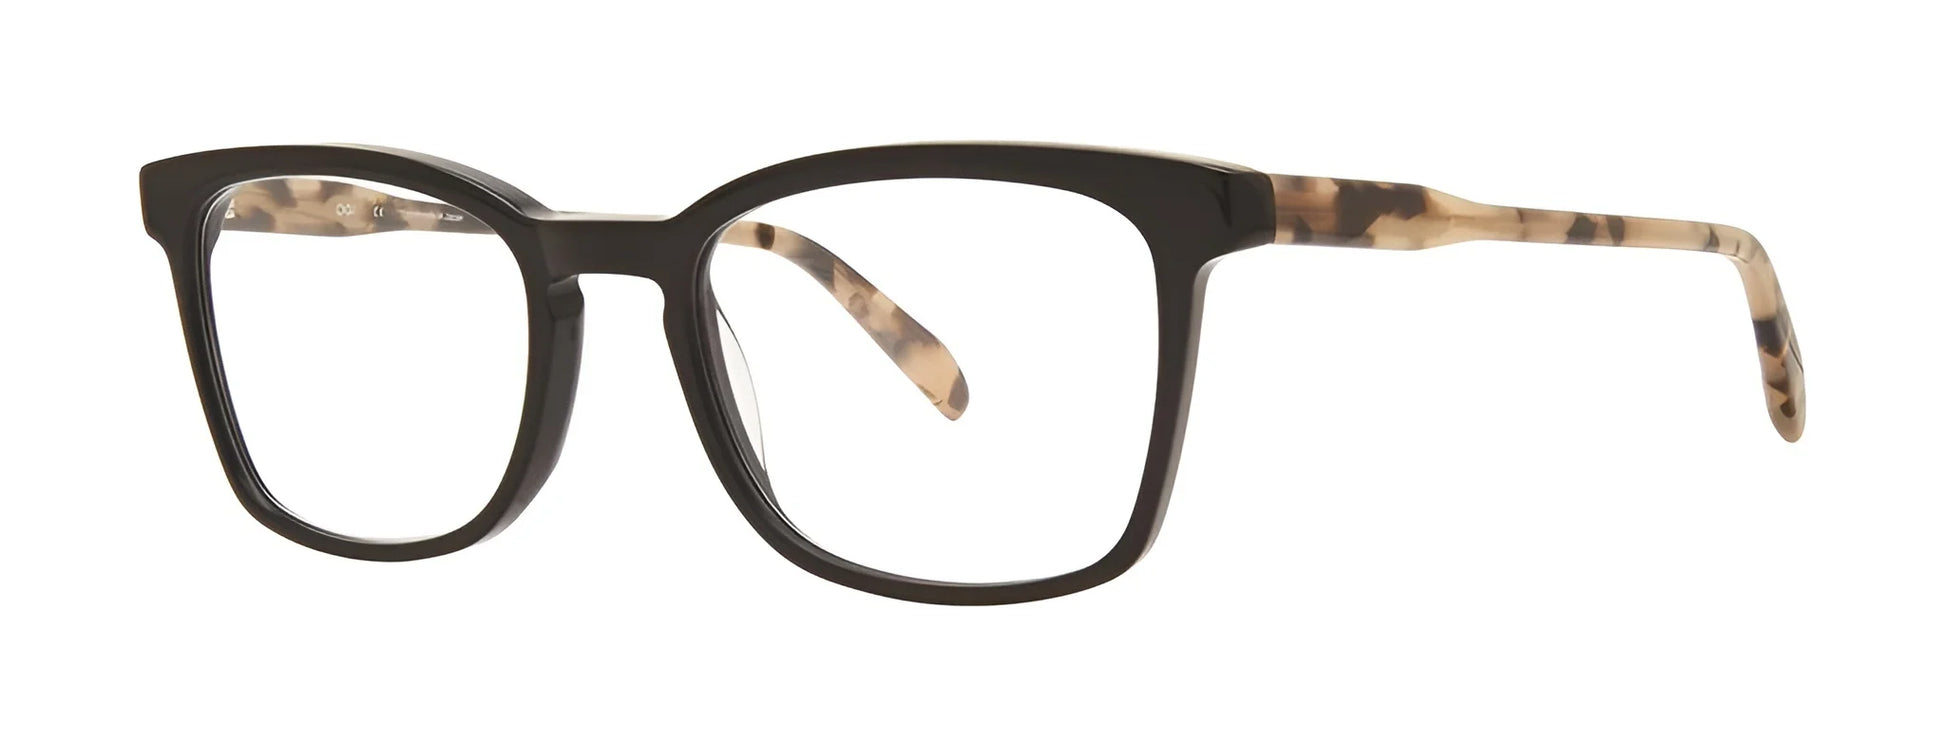 OGI LUTEFISK Eyeglasses Black / Tortoise